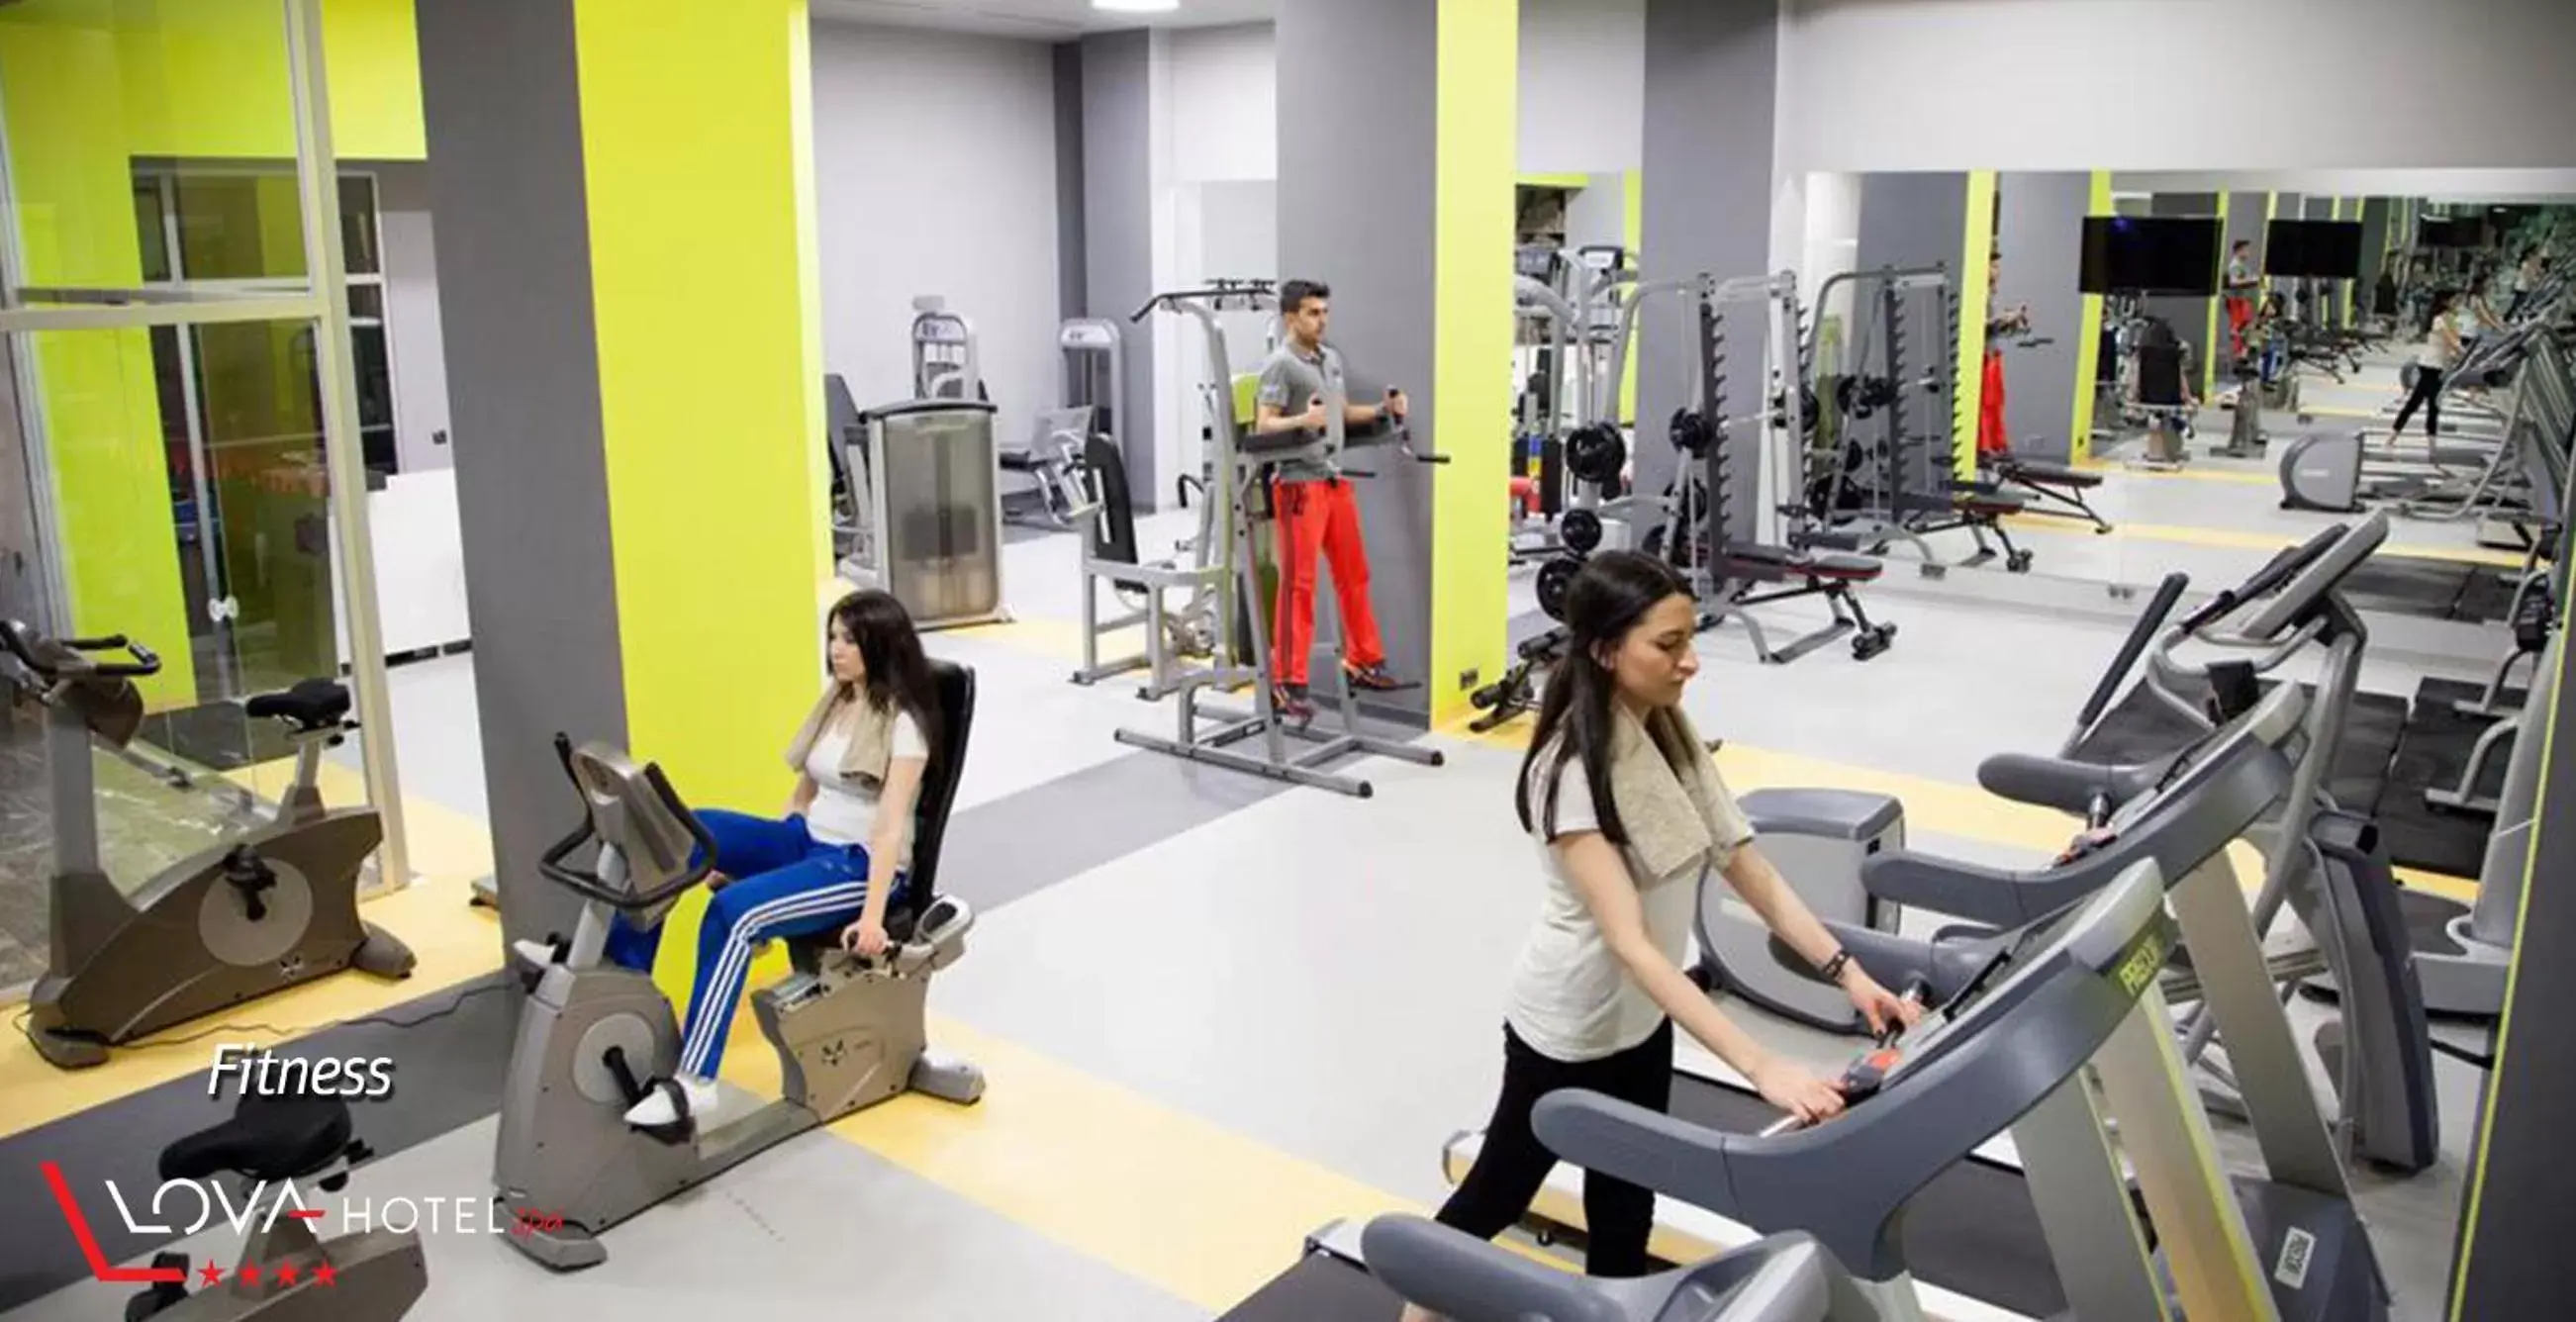 Spa and wellness centre/facilities, Fitness Center/Facilities in Yalova Lova Hotel & SPA Yalova